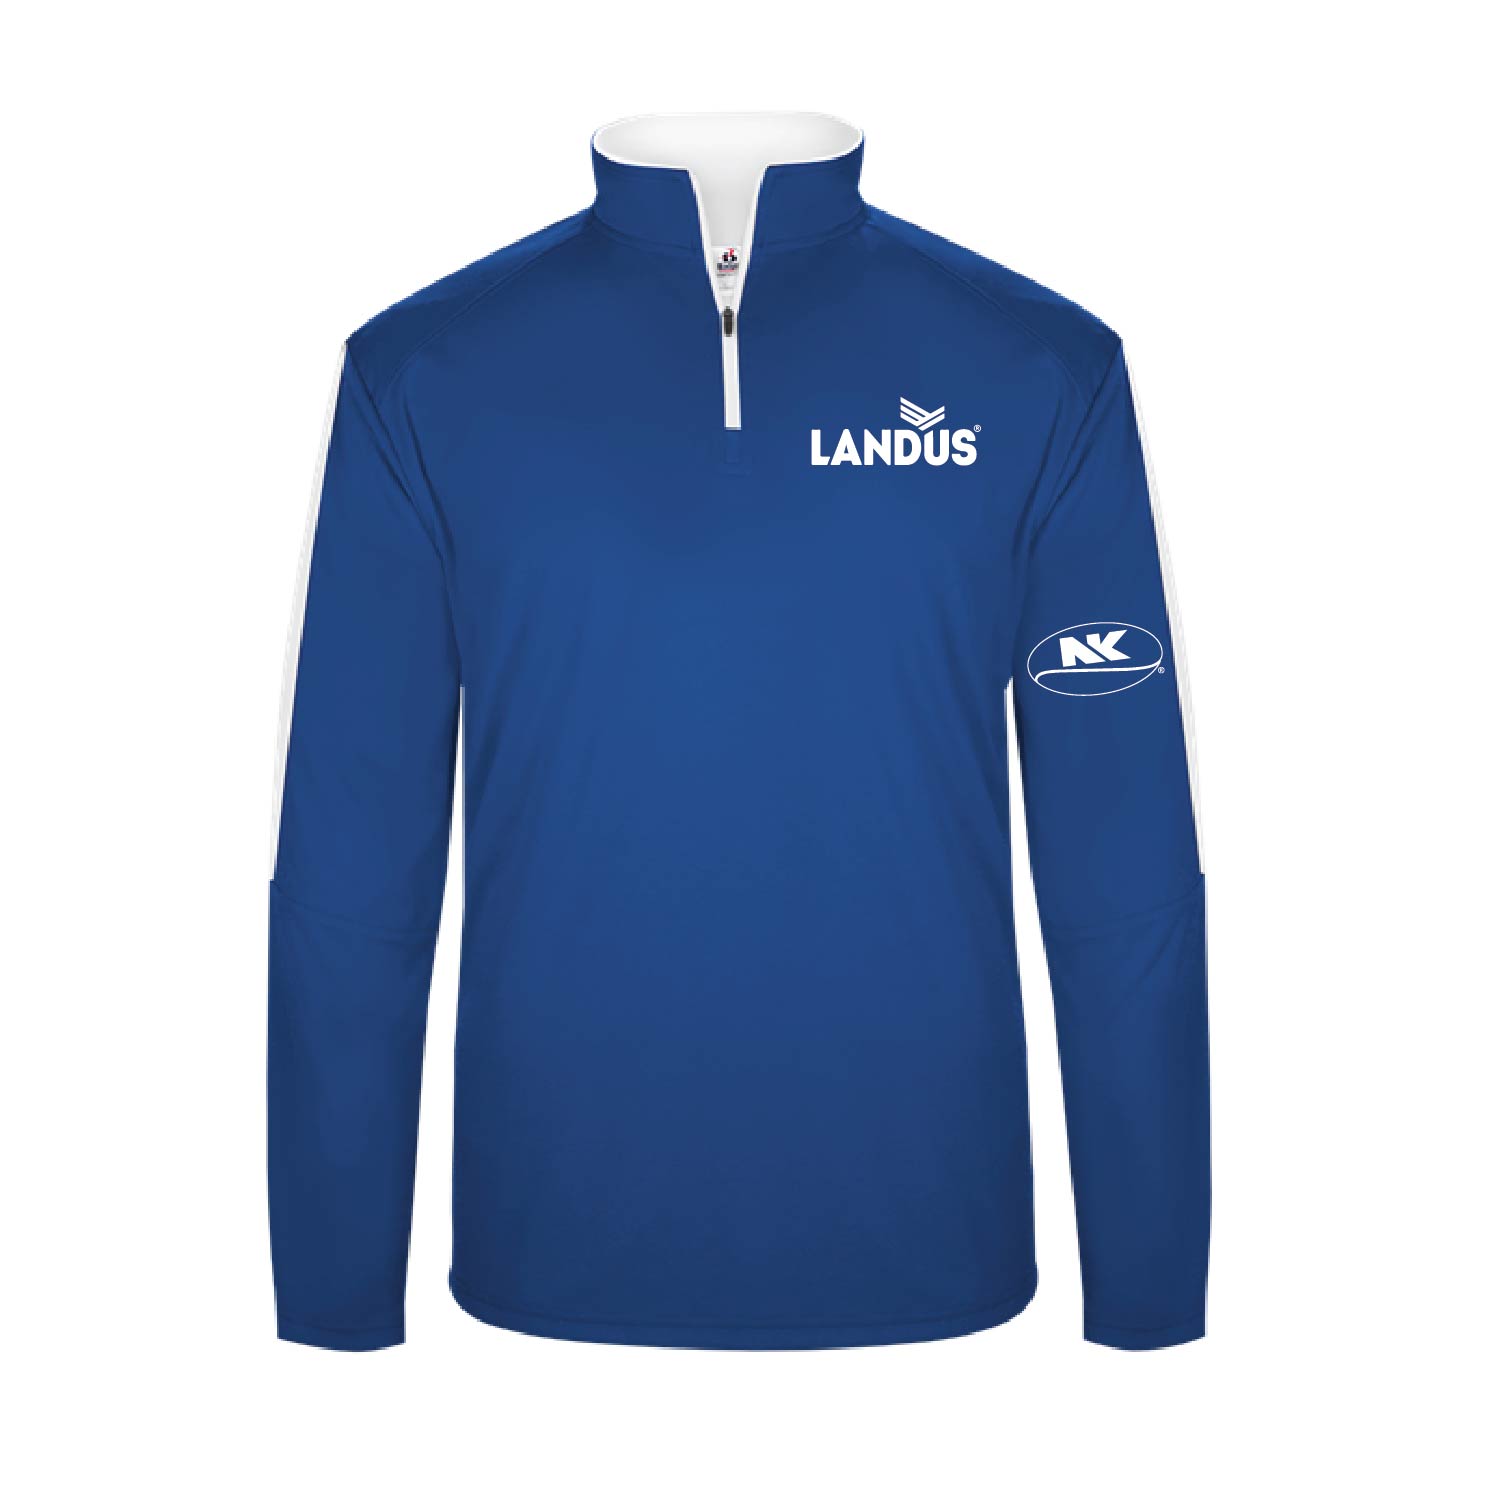 Landus/NK Pullovers